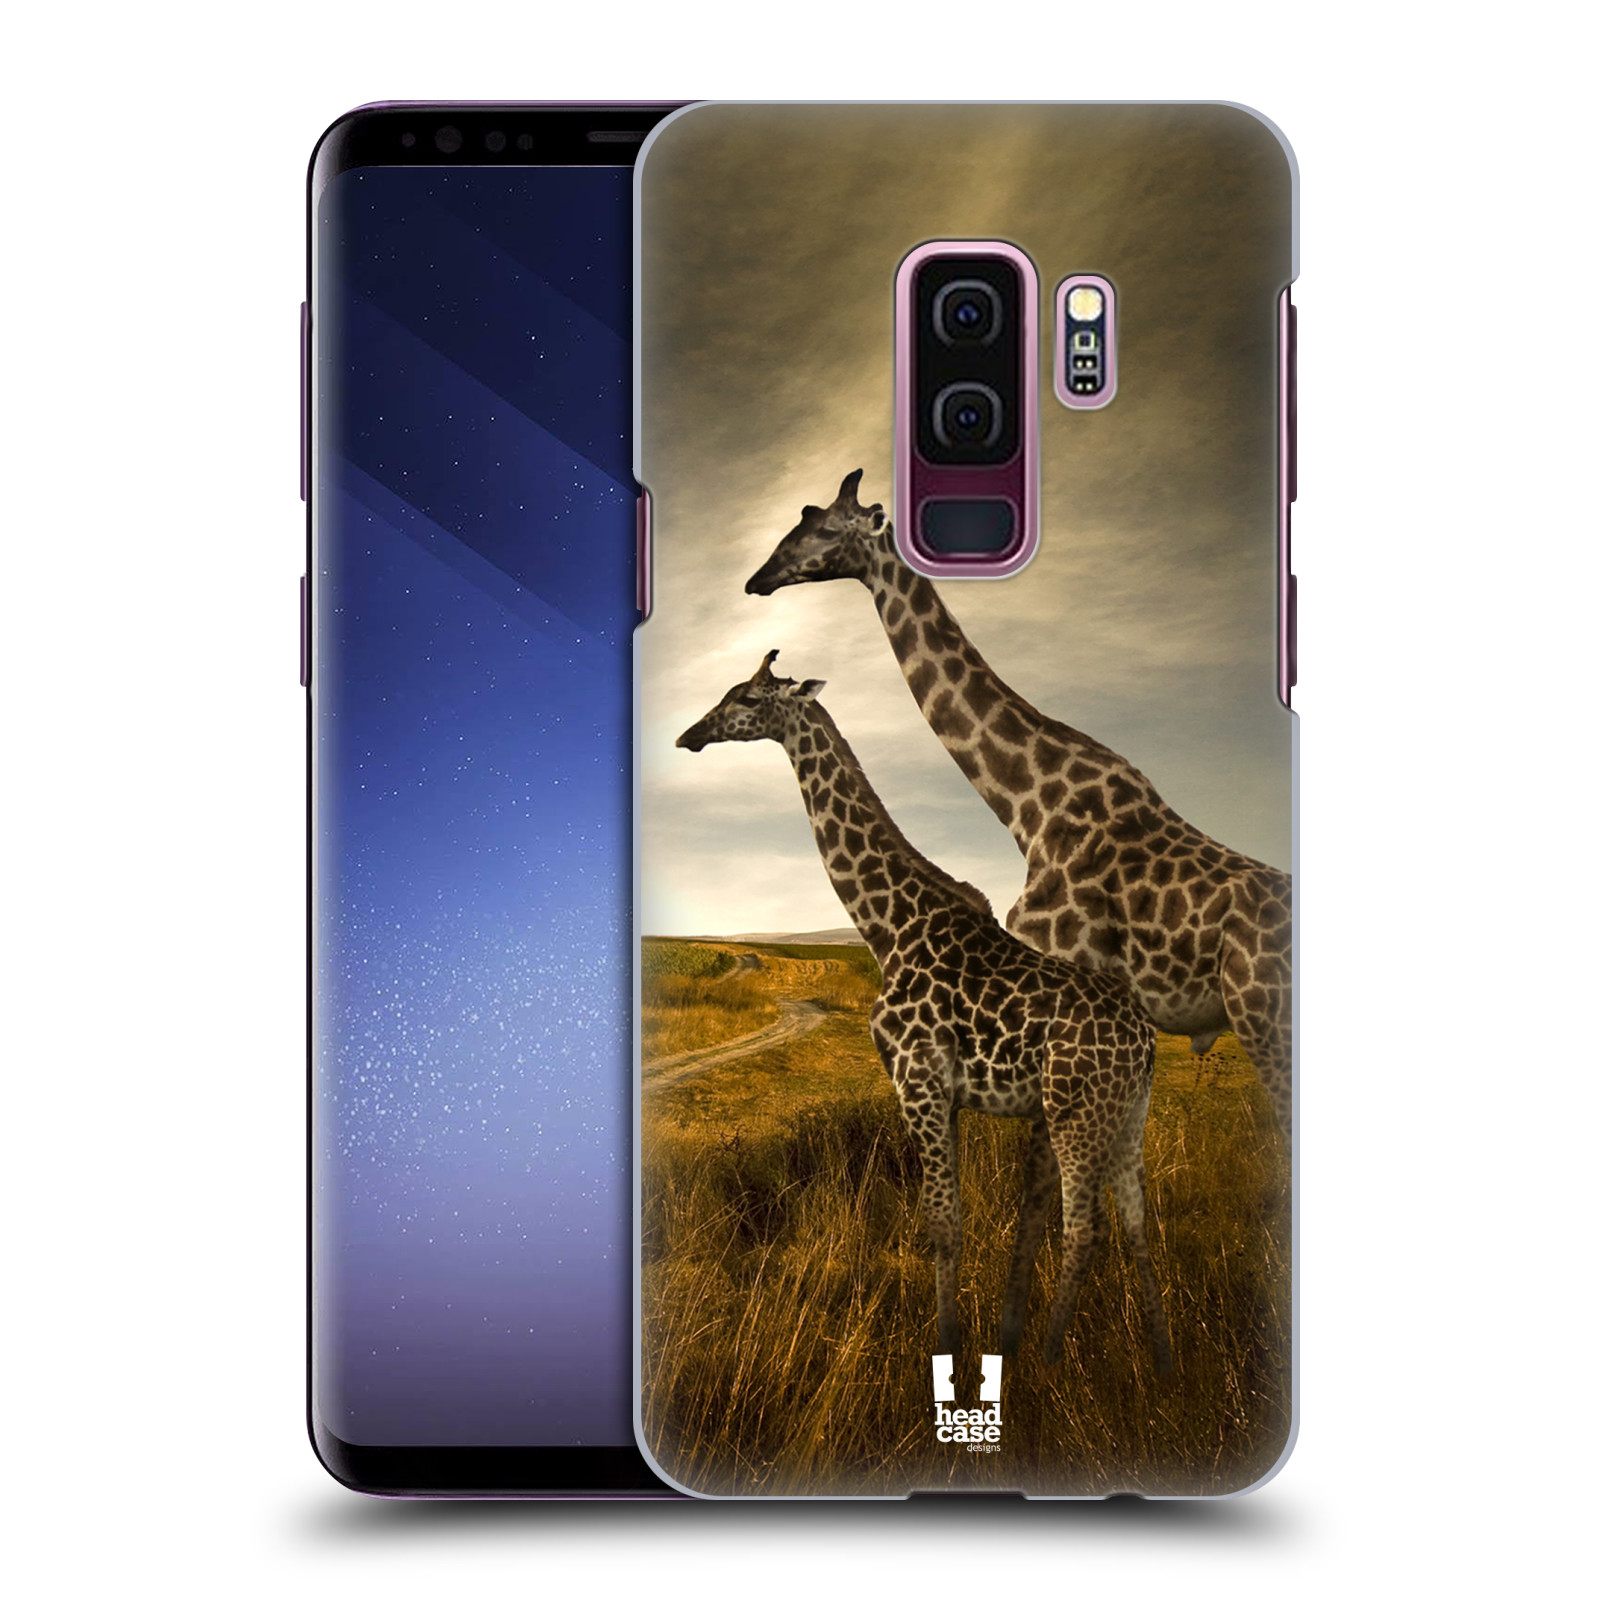 Zadní obal pro mobil Samsung Galaxy S9 PLUS - HEAD CASE - Svět zvířat žirafy